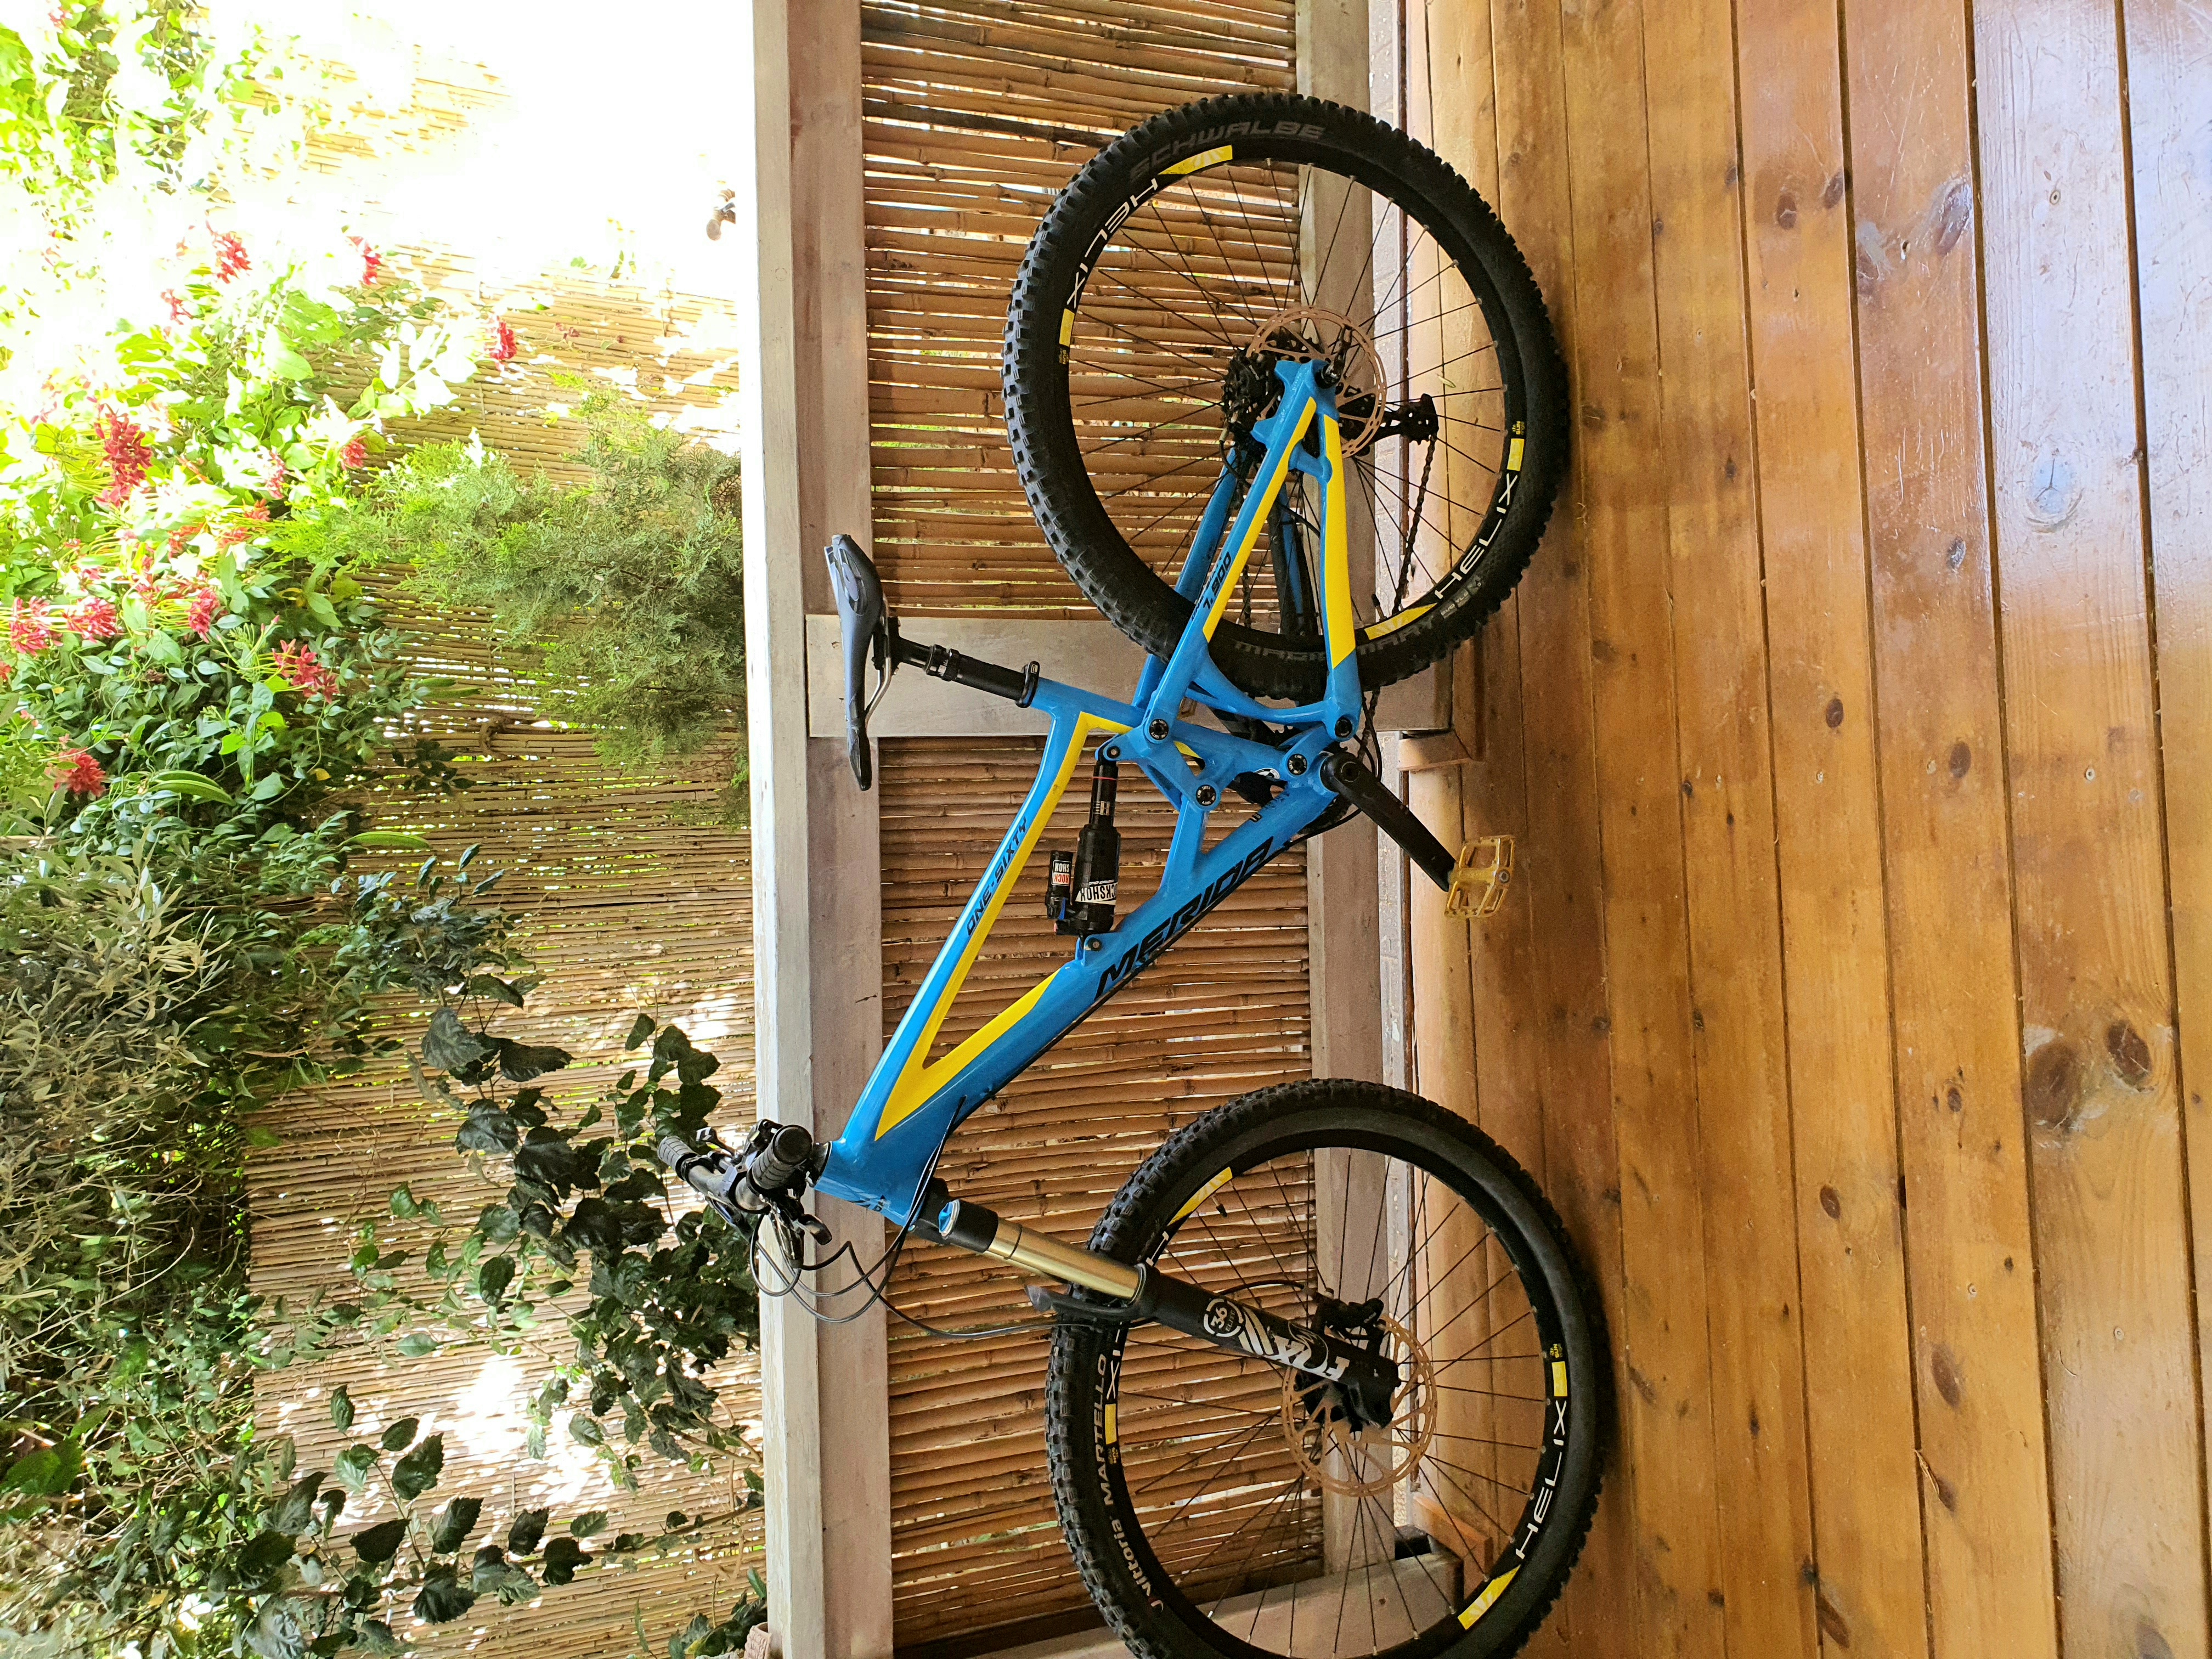 תמונה 4 ,Merida one sixty 7.900  למכירה בשלומי  אופניים  הרים שיכוך מלא